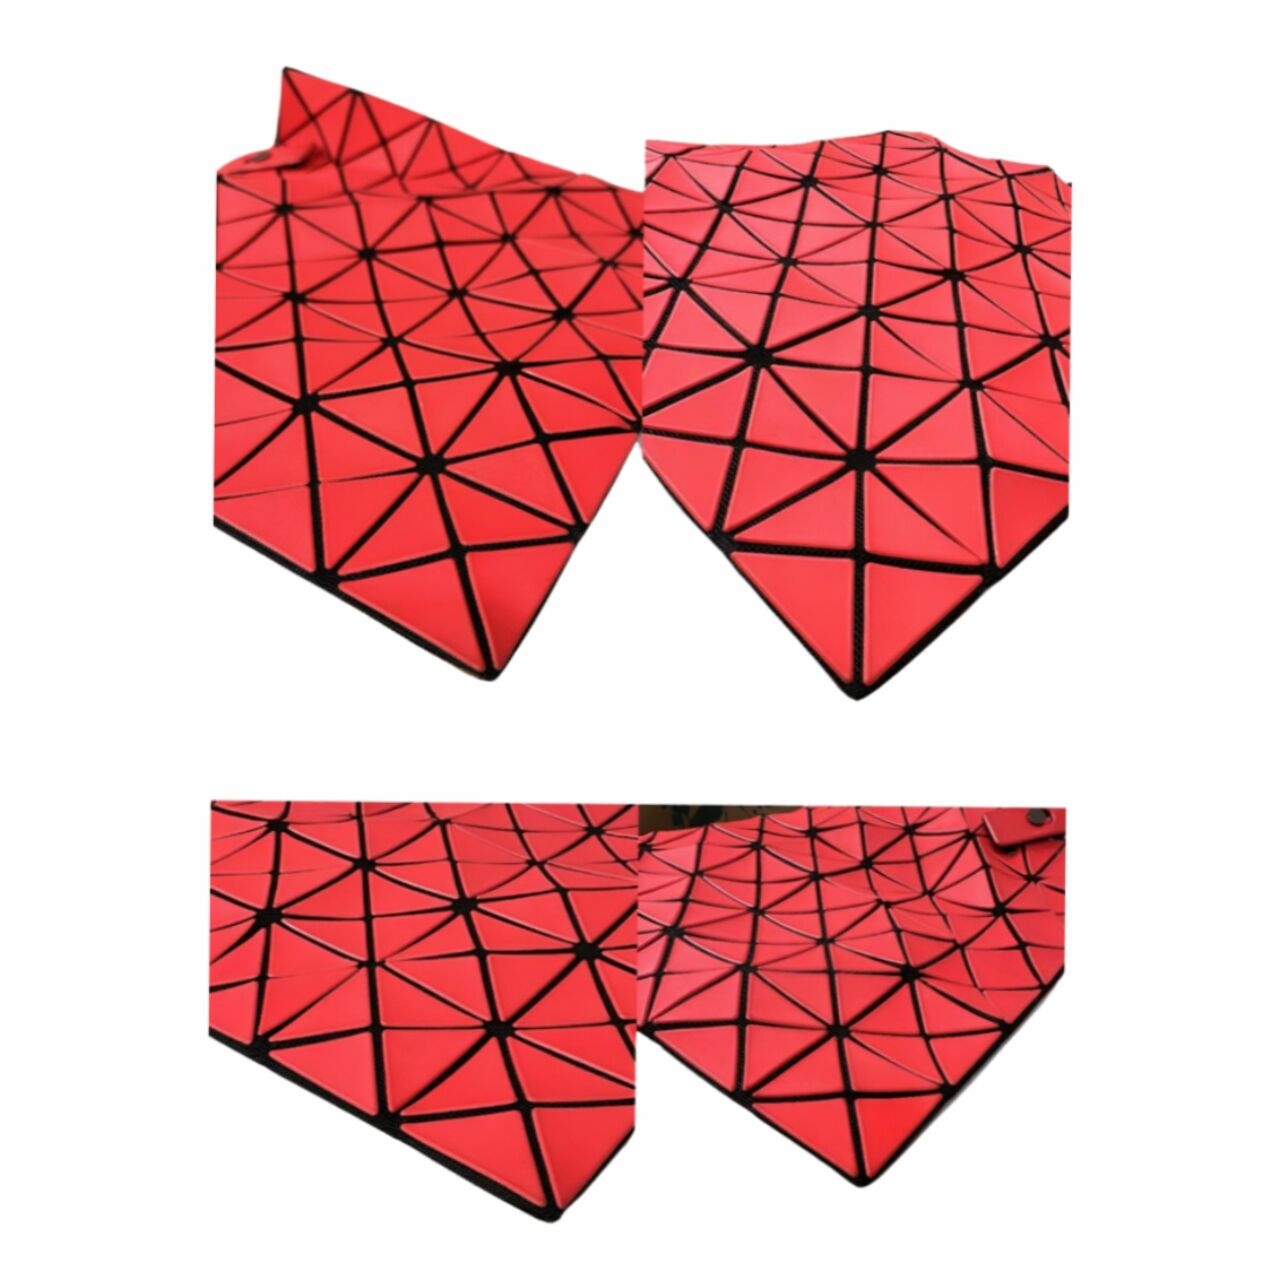 Issey Miyake Bao Bao Red Geometric Tote Bag